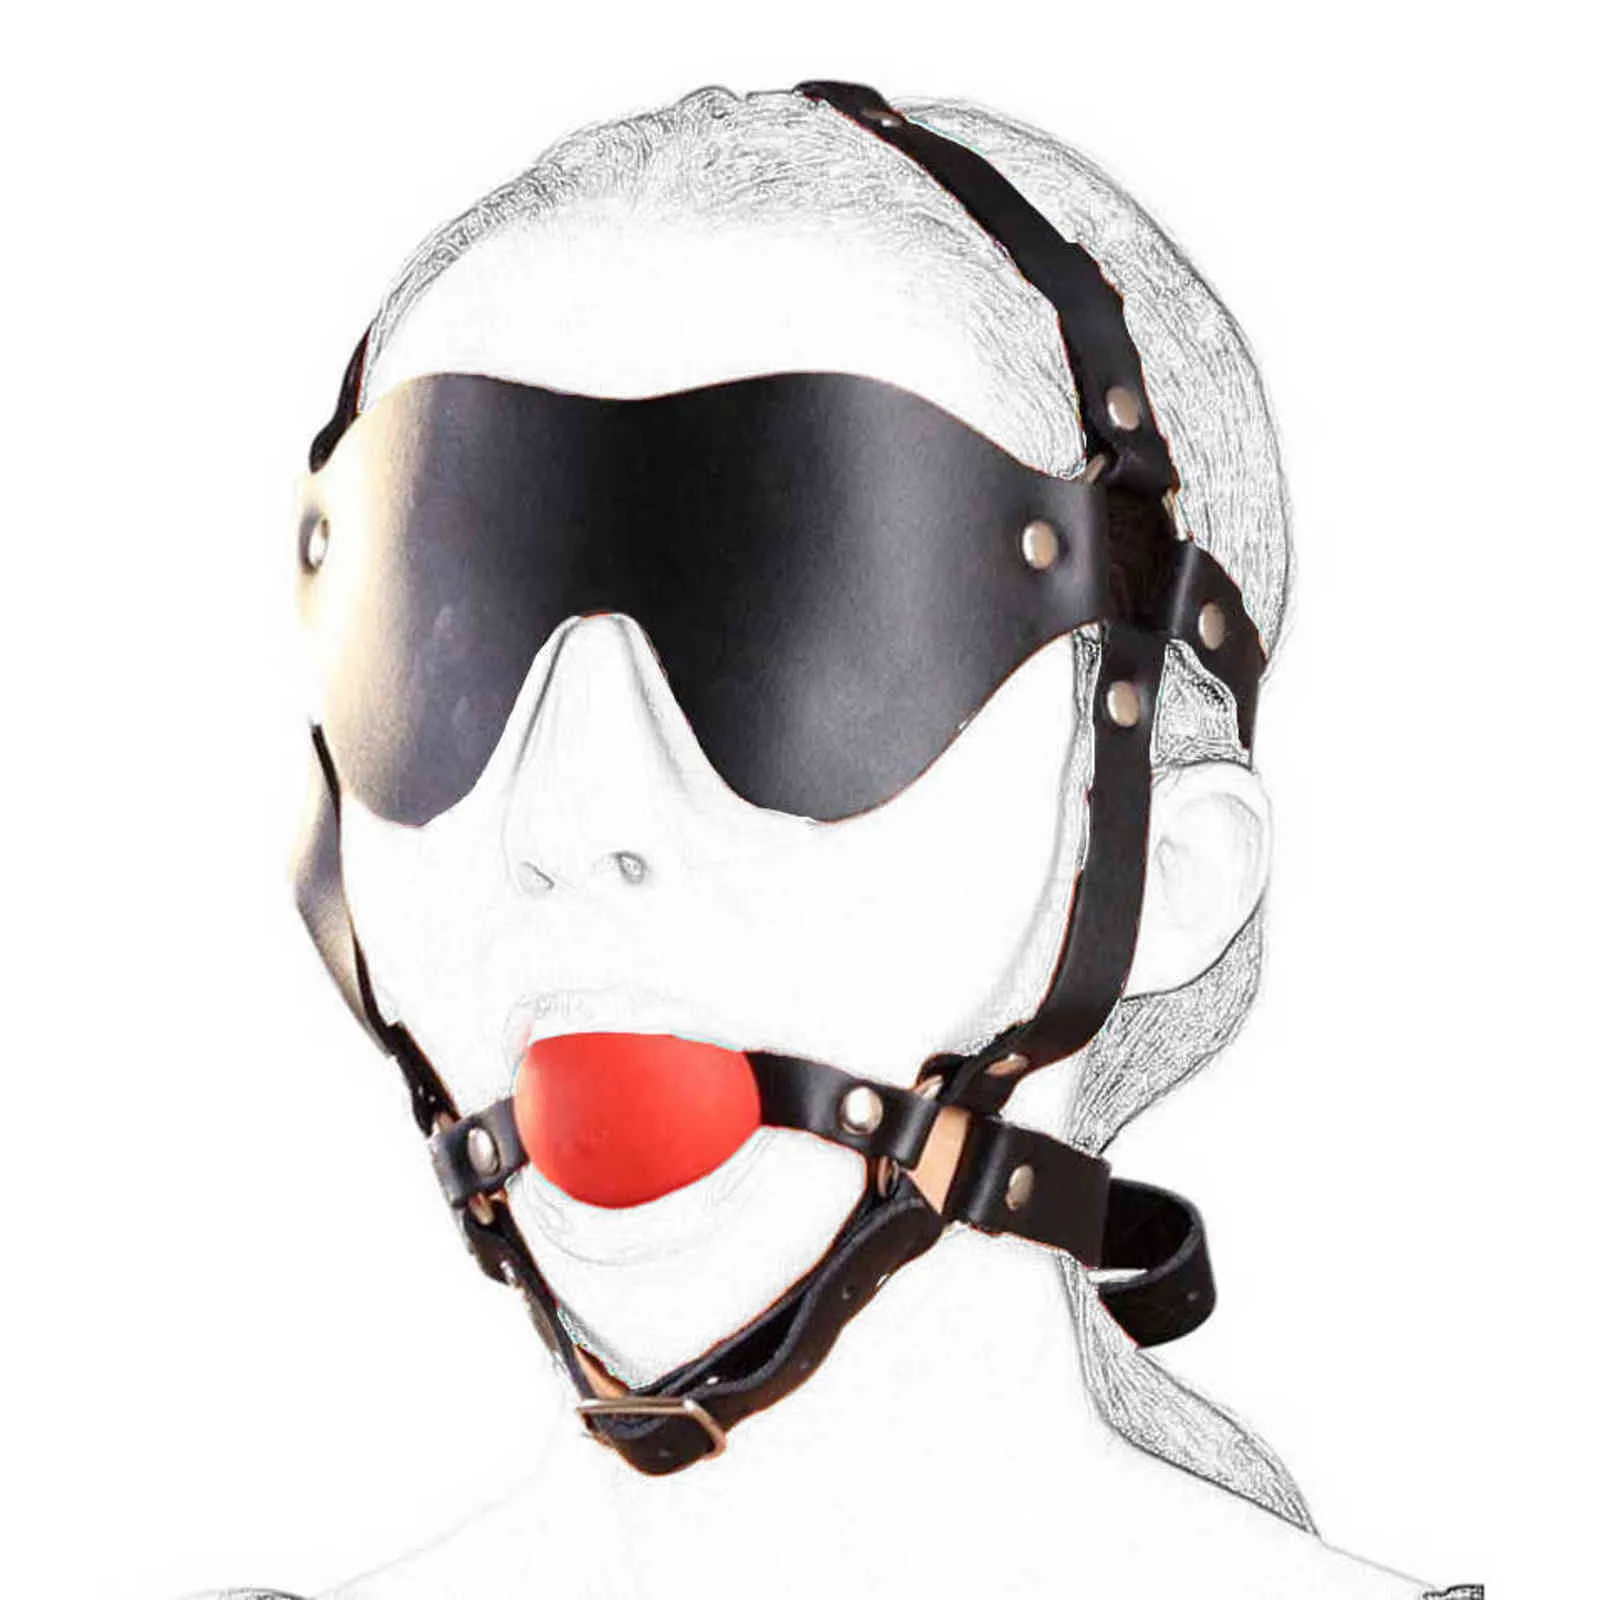 NXY Spielzeug für Erwachsene camaTech Leder-Kopfgeschirr mit Augenbinde, fester Silikon-Maulkorb, Ballknebel, festgeschnallt, am Mund festgeschnallt, Bondage-Fetischspielzeug 1201